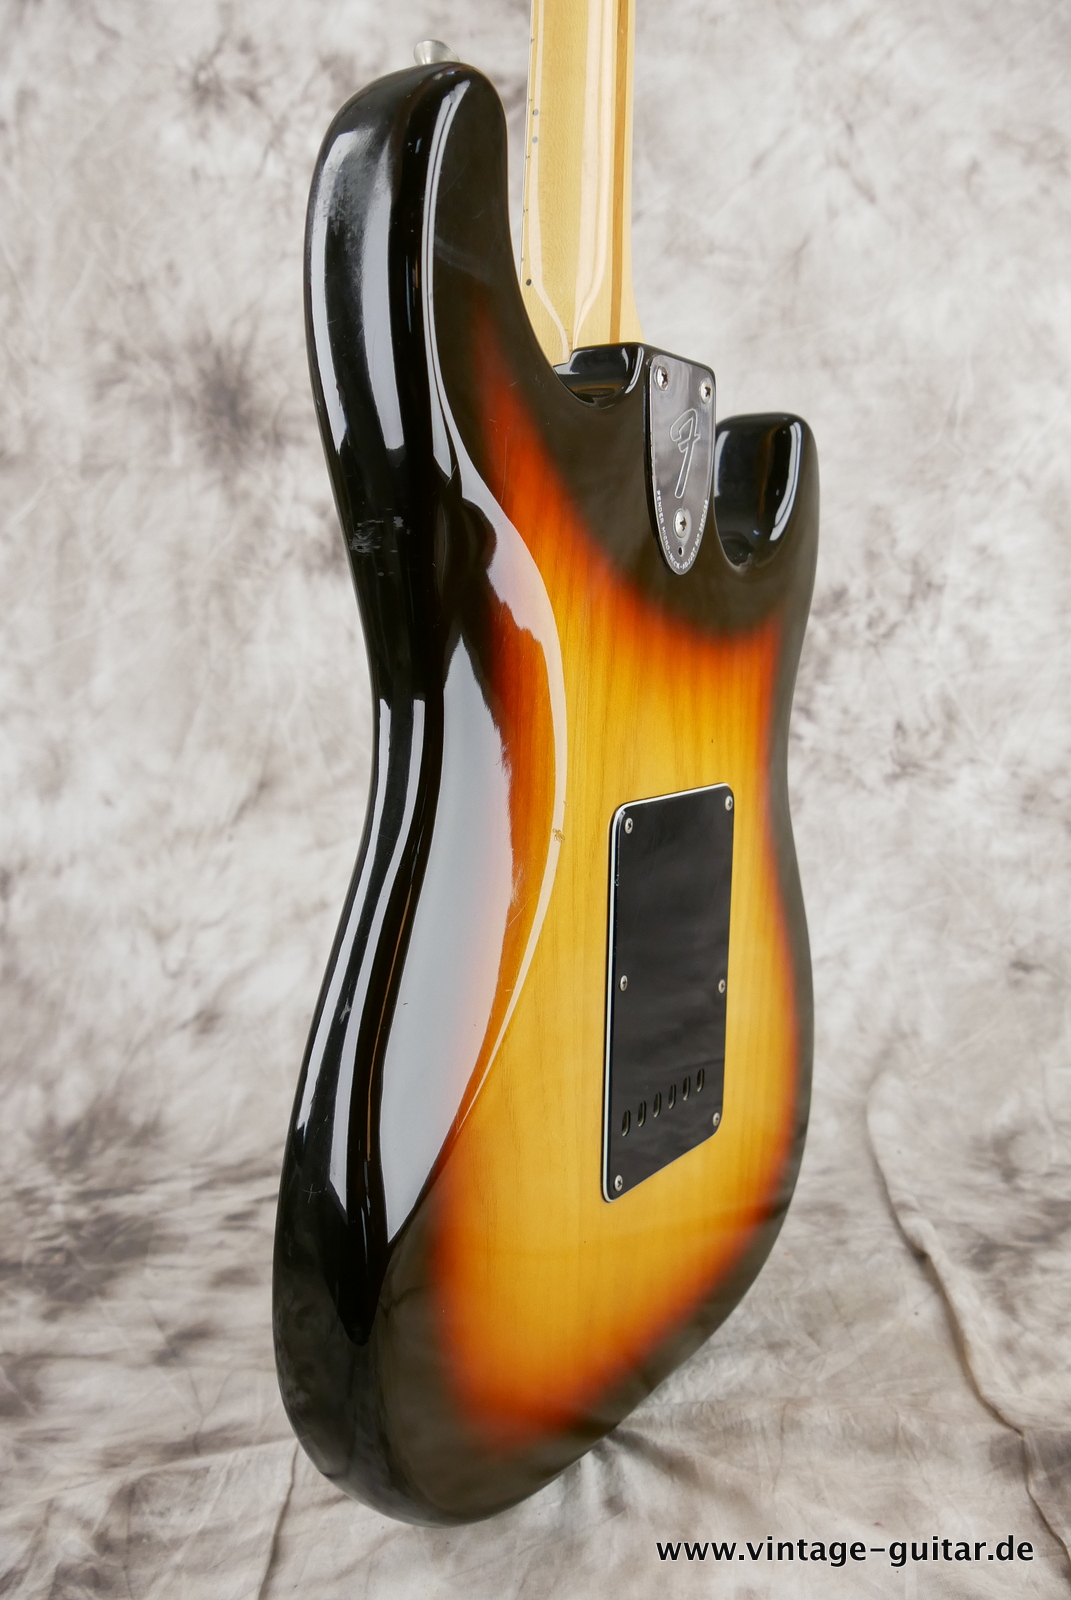 Fender_Left_Hand_Stratocaster_1980_sunburst_usa_maple_neck-011.JPG